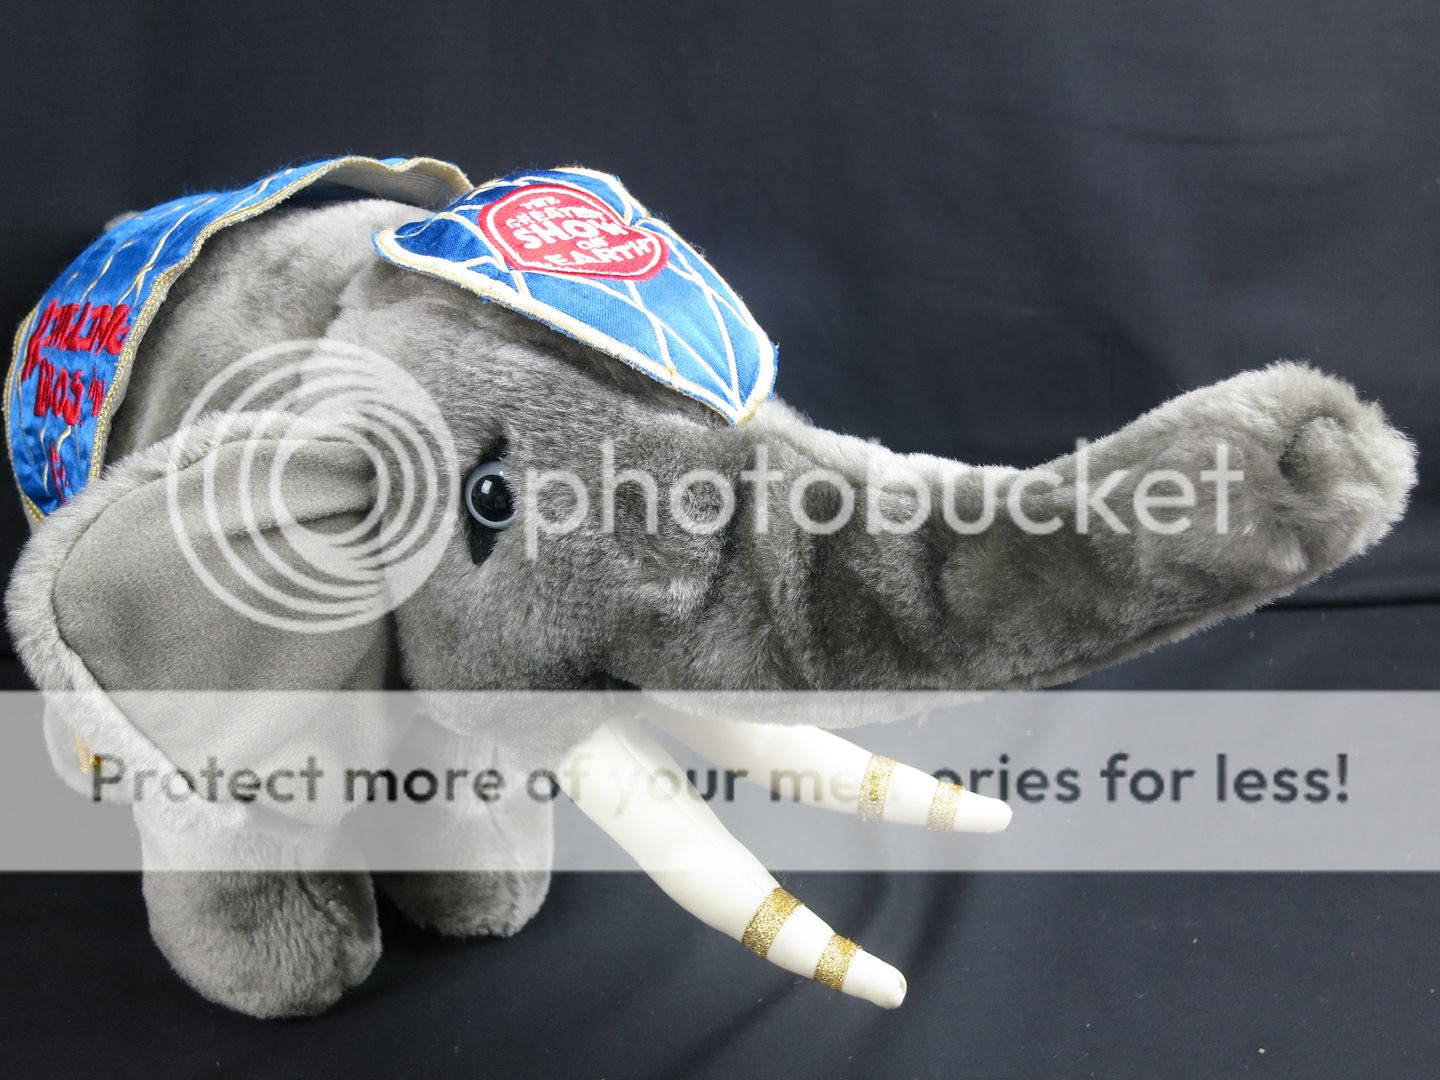 barnum and bailey stuffed elephant